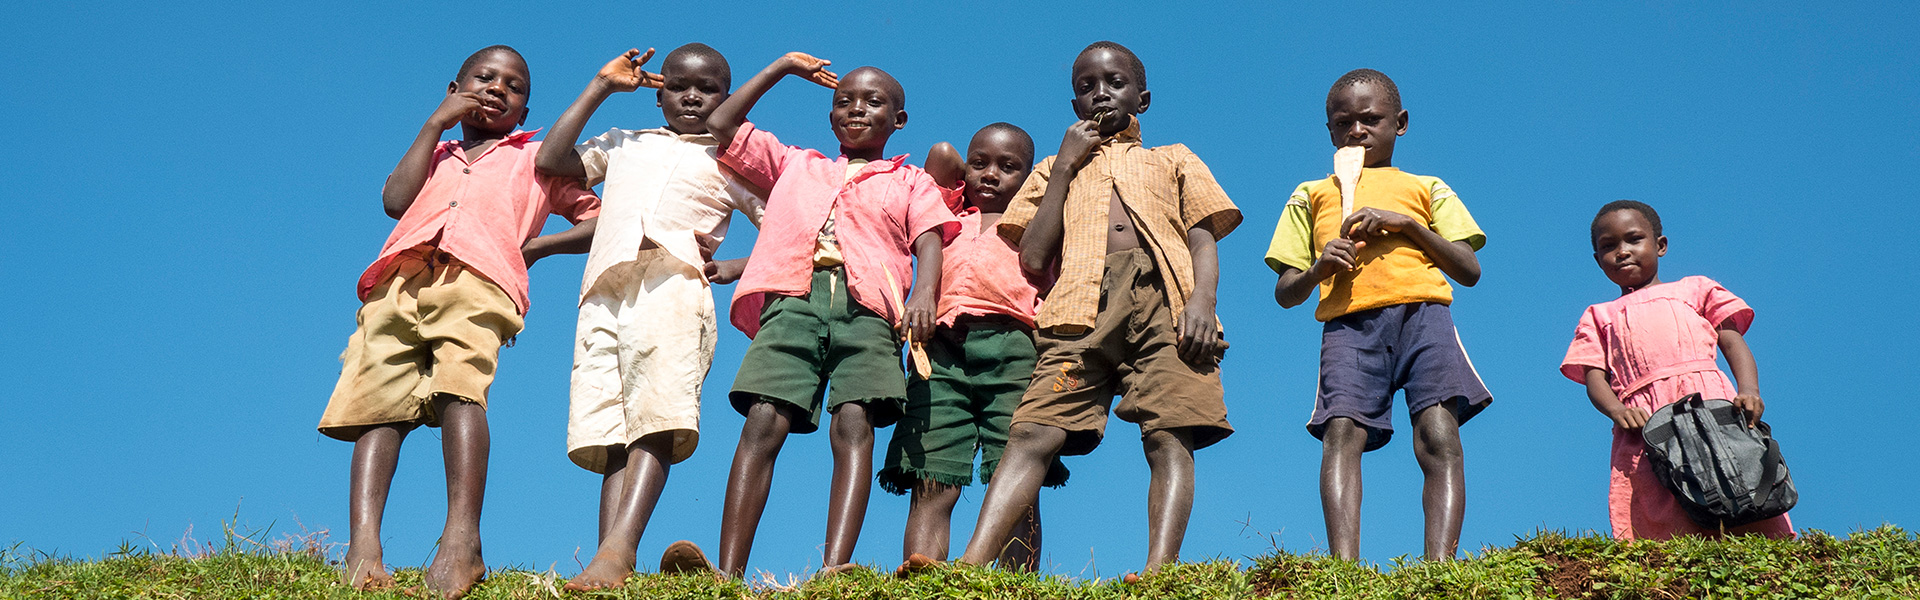 uganda-children-on-hill